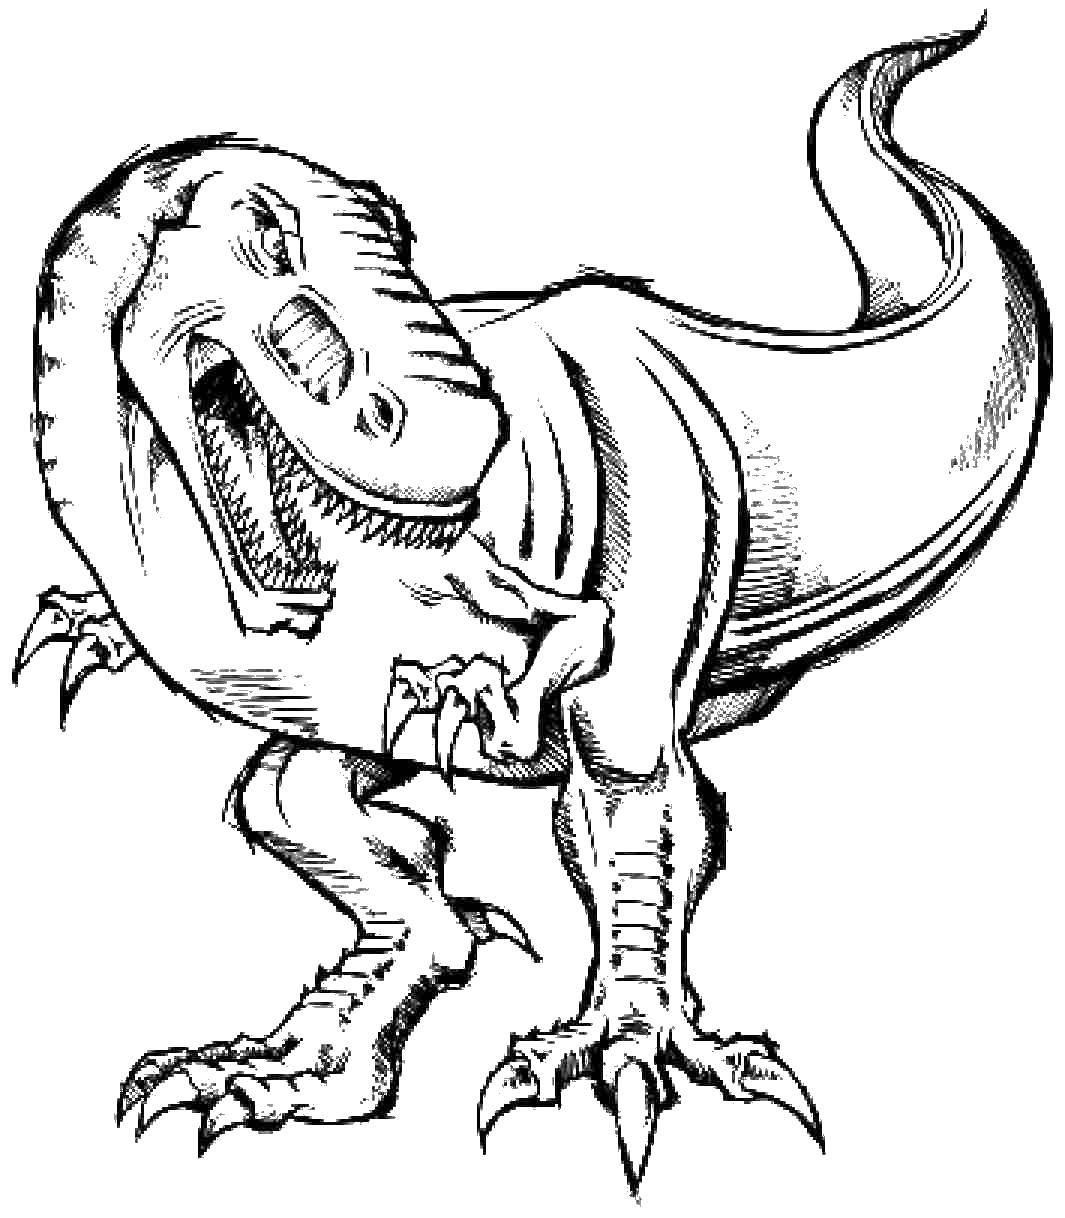 Ребенок раскрашивает картинку с динозаврами (тираннозавр)